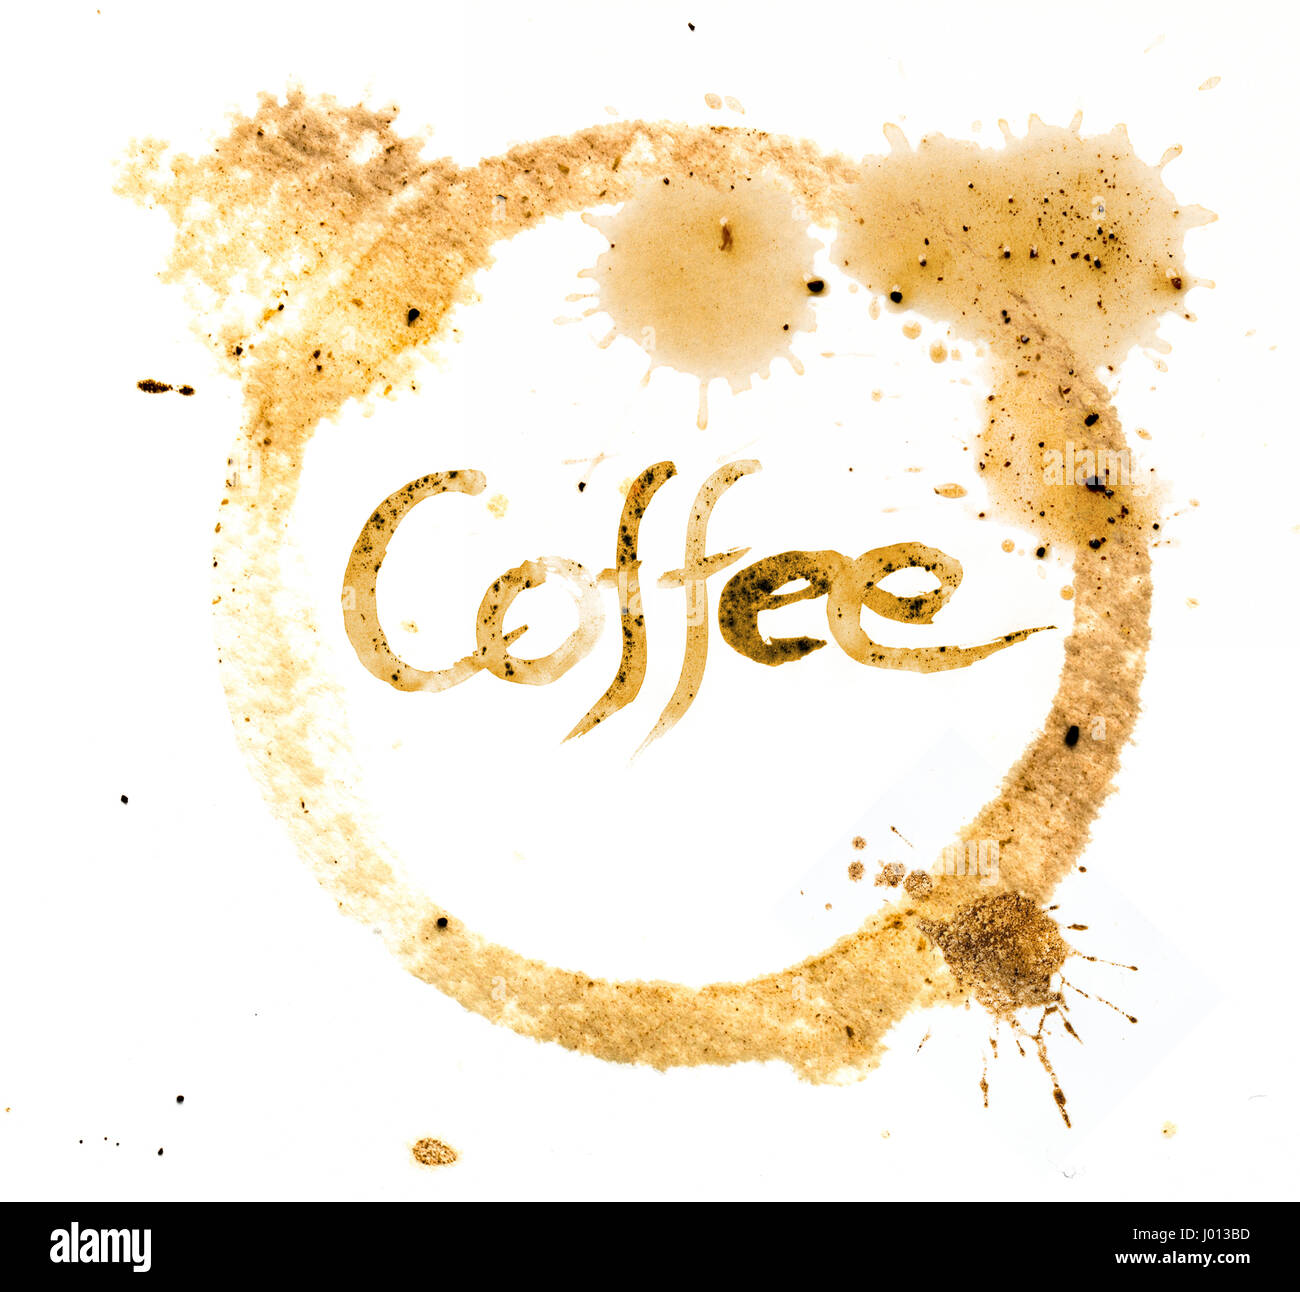 Cafe mit Kaffee Tinte in Kaffee Tasse Kreis Fleck geschrieben Stockfoto